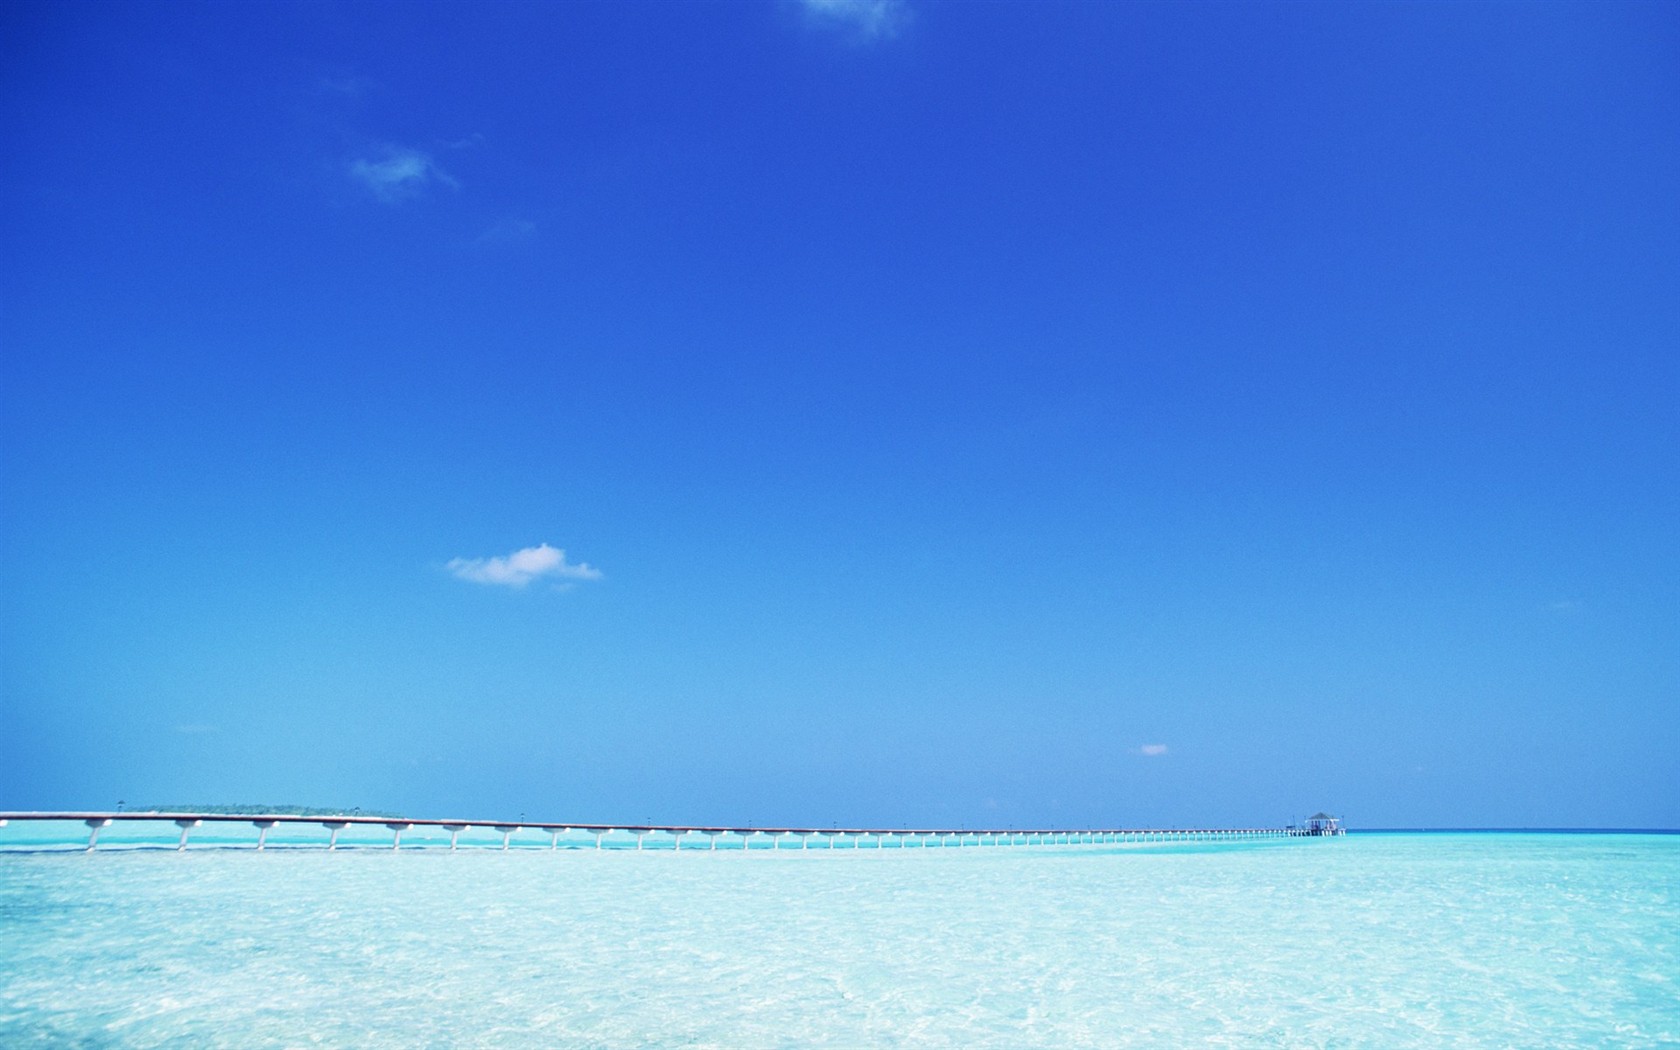 Maledivy vody a modrou oblohu #22 - 1680x1050